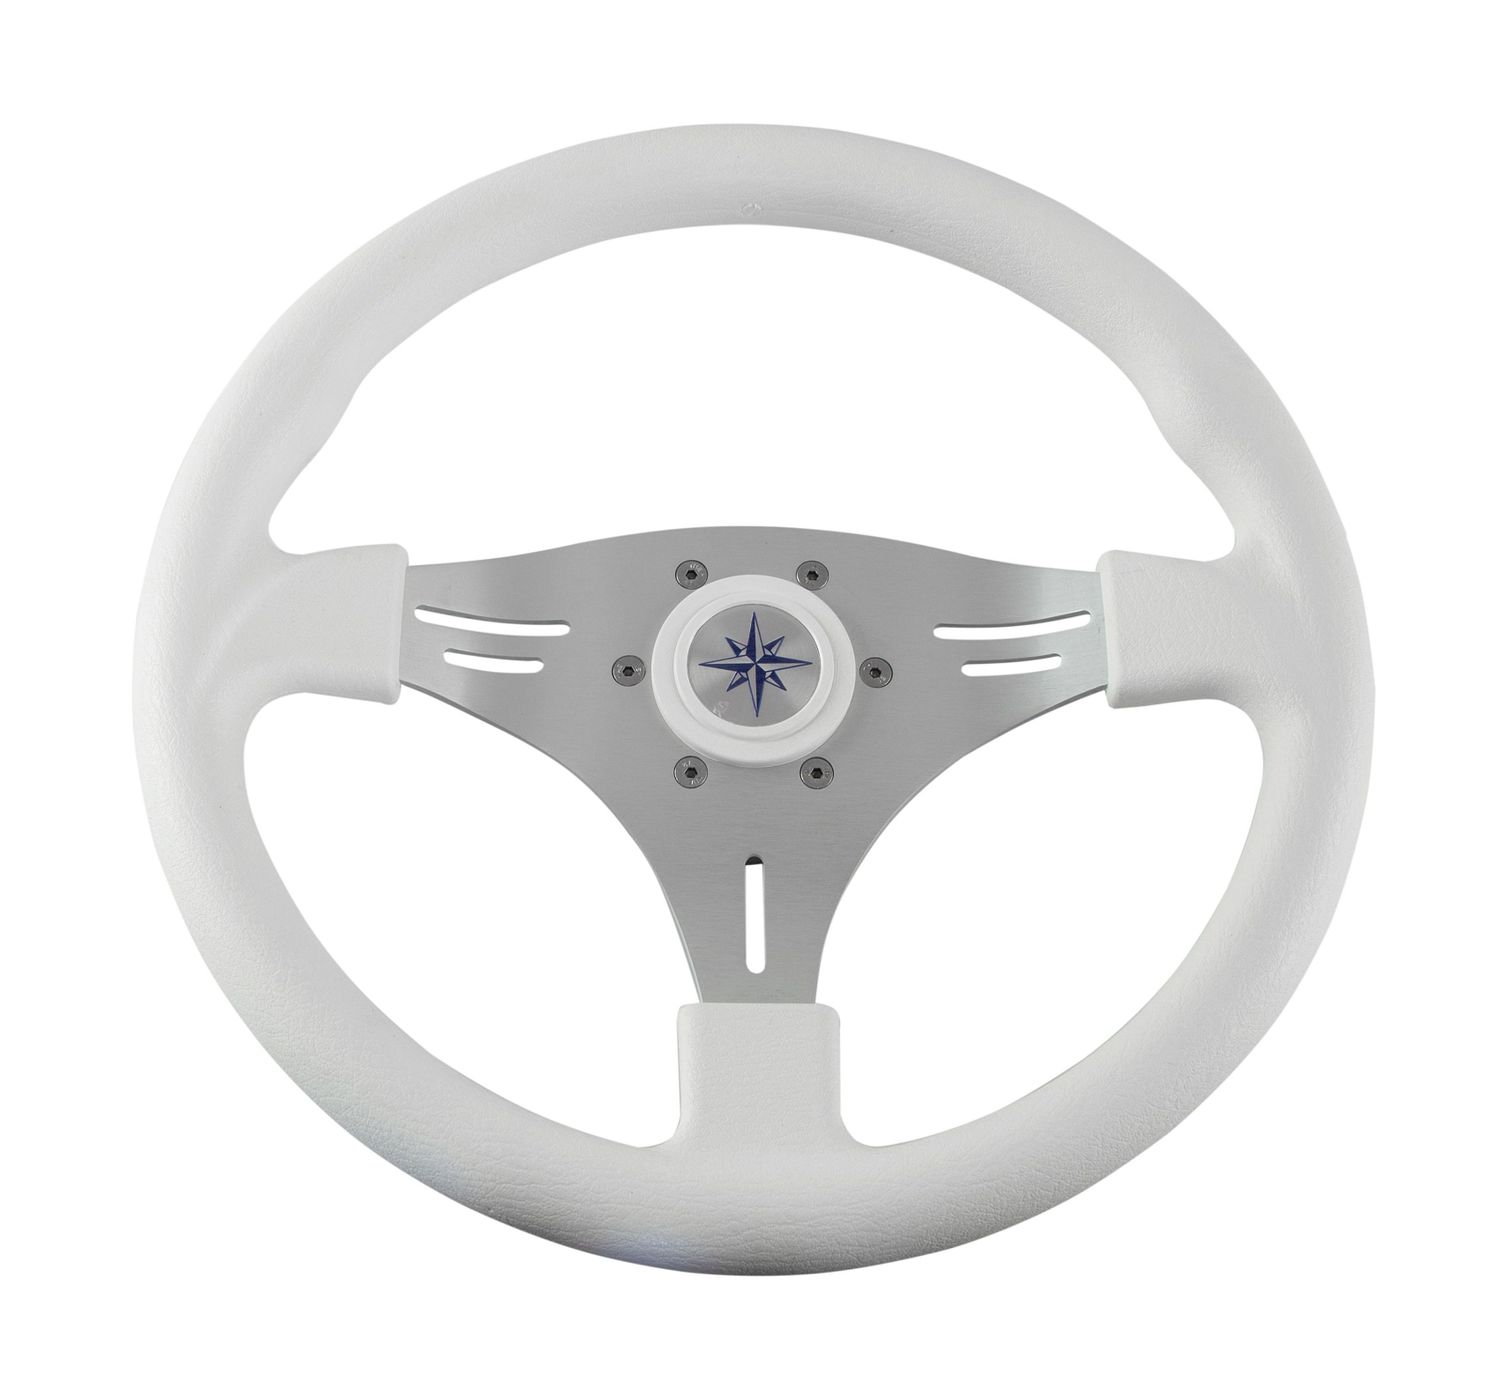 Рулевое колесо MANTA обод белый, спицы серебряные д. 355 мм VN70551-08 рулевое колесо evolution белый обод с карбоновыми вставками more 10016468